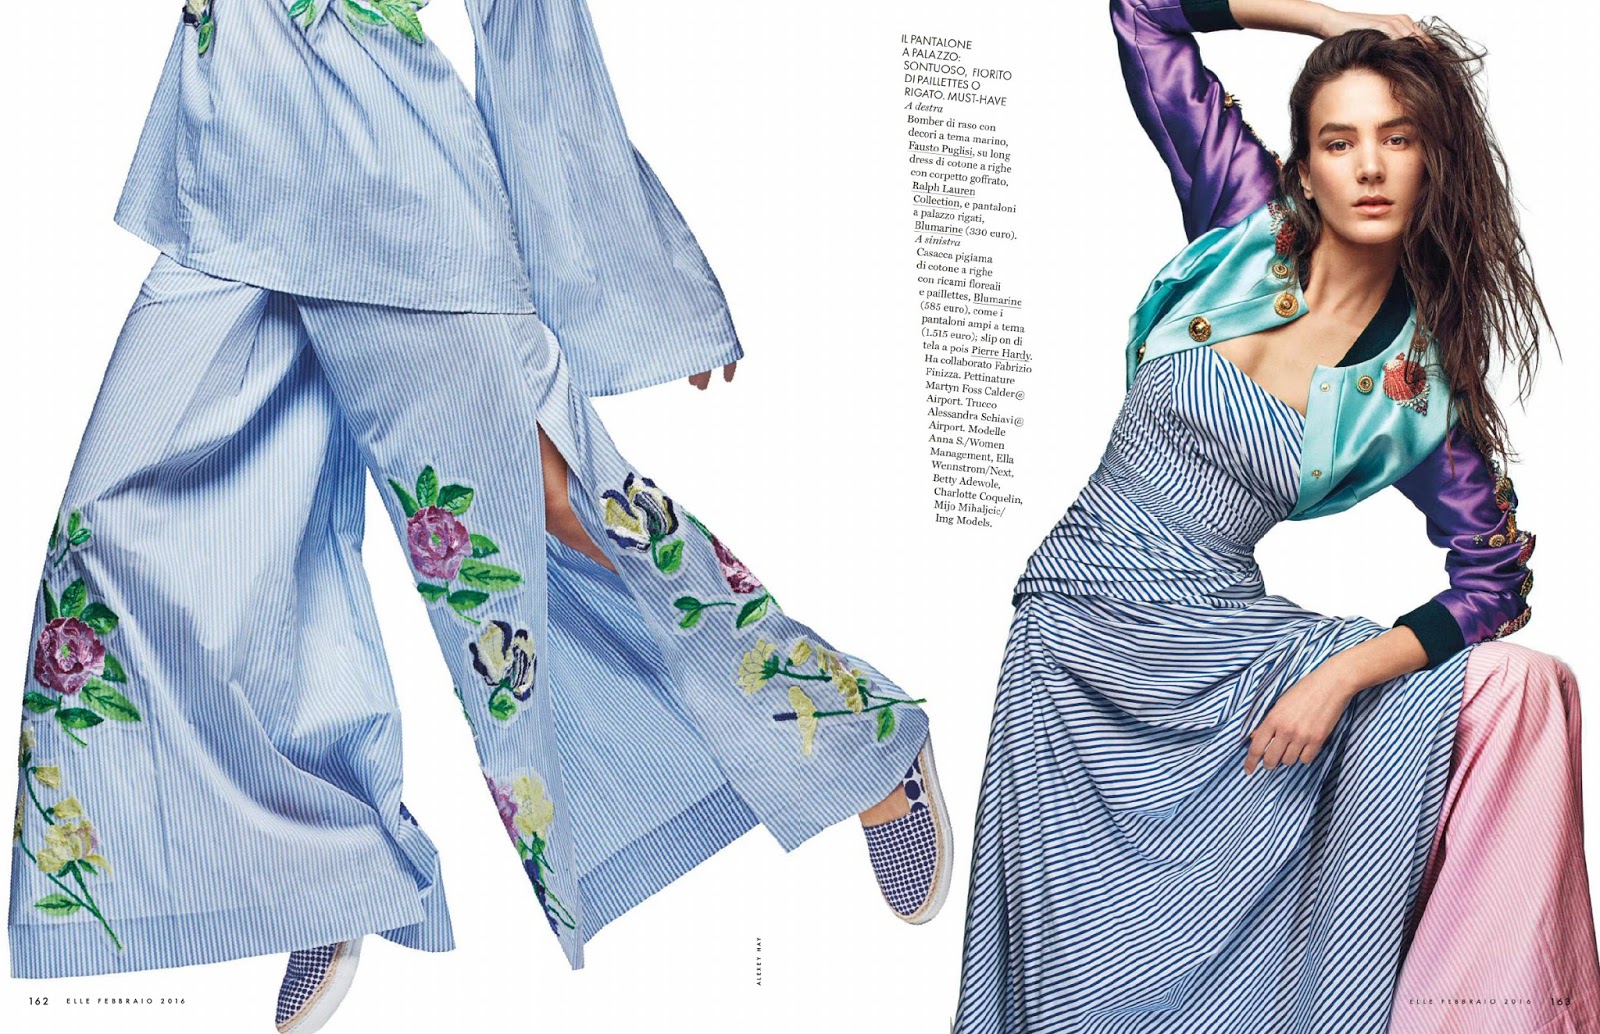 Arts Cross Stitch: Fashion Model, @ Ella Wennström by Alexei Hay for ...